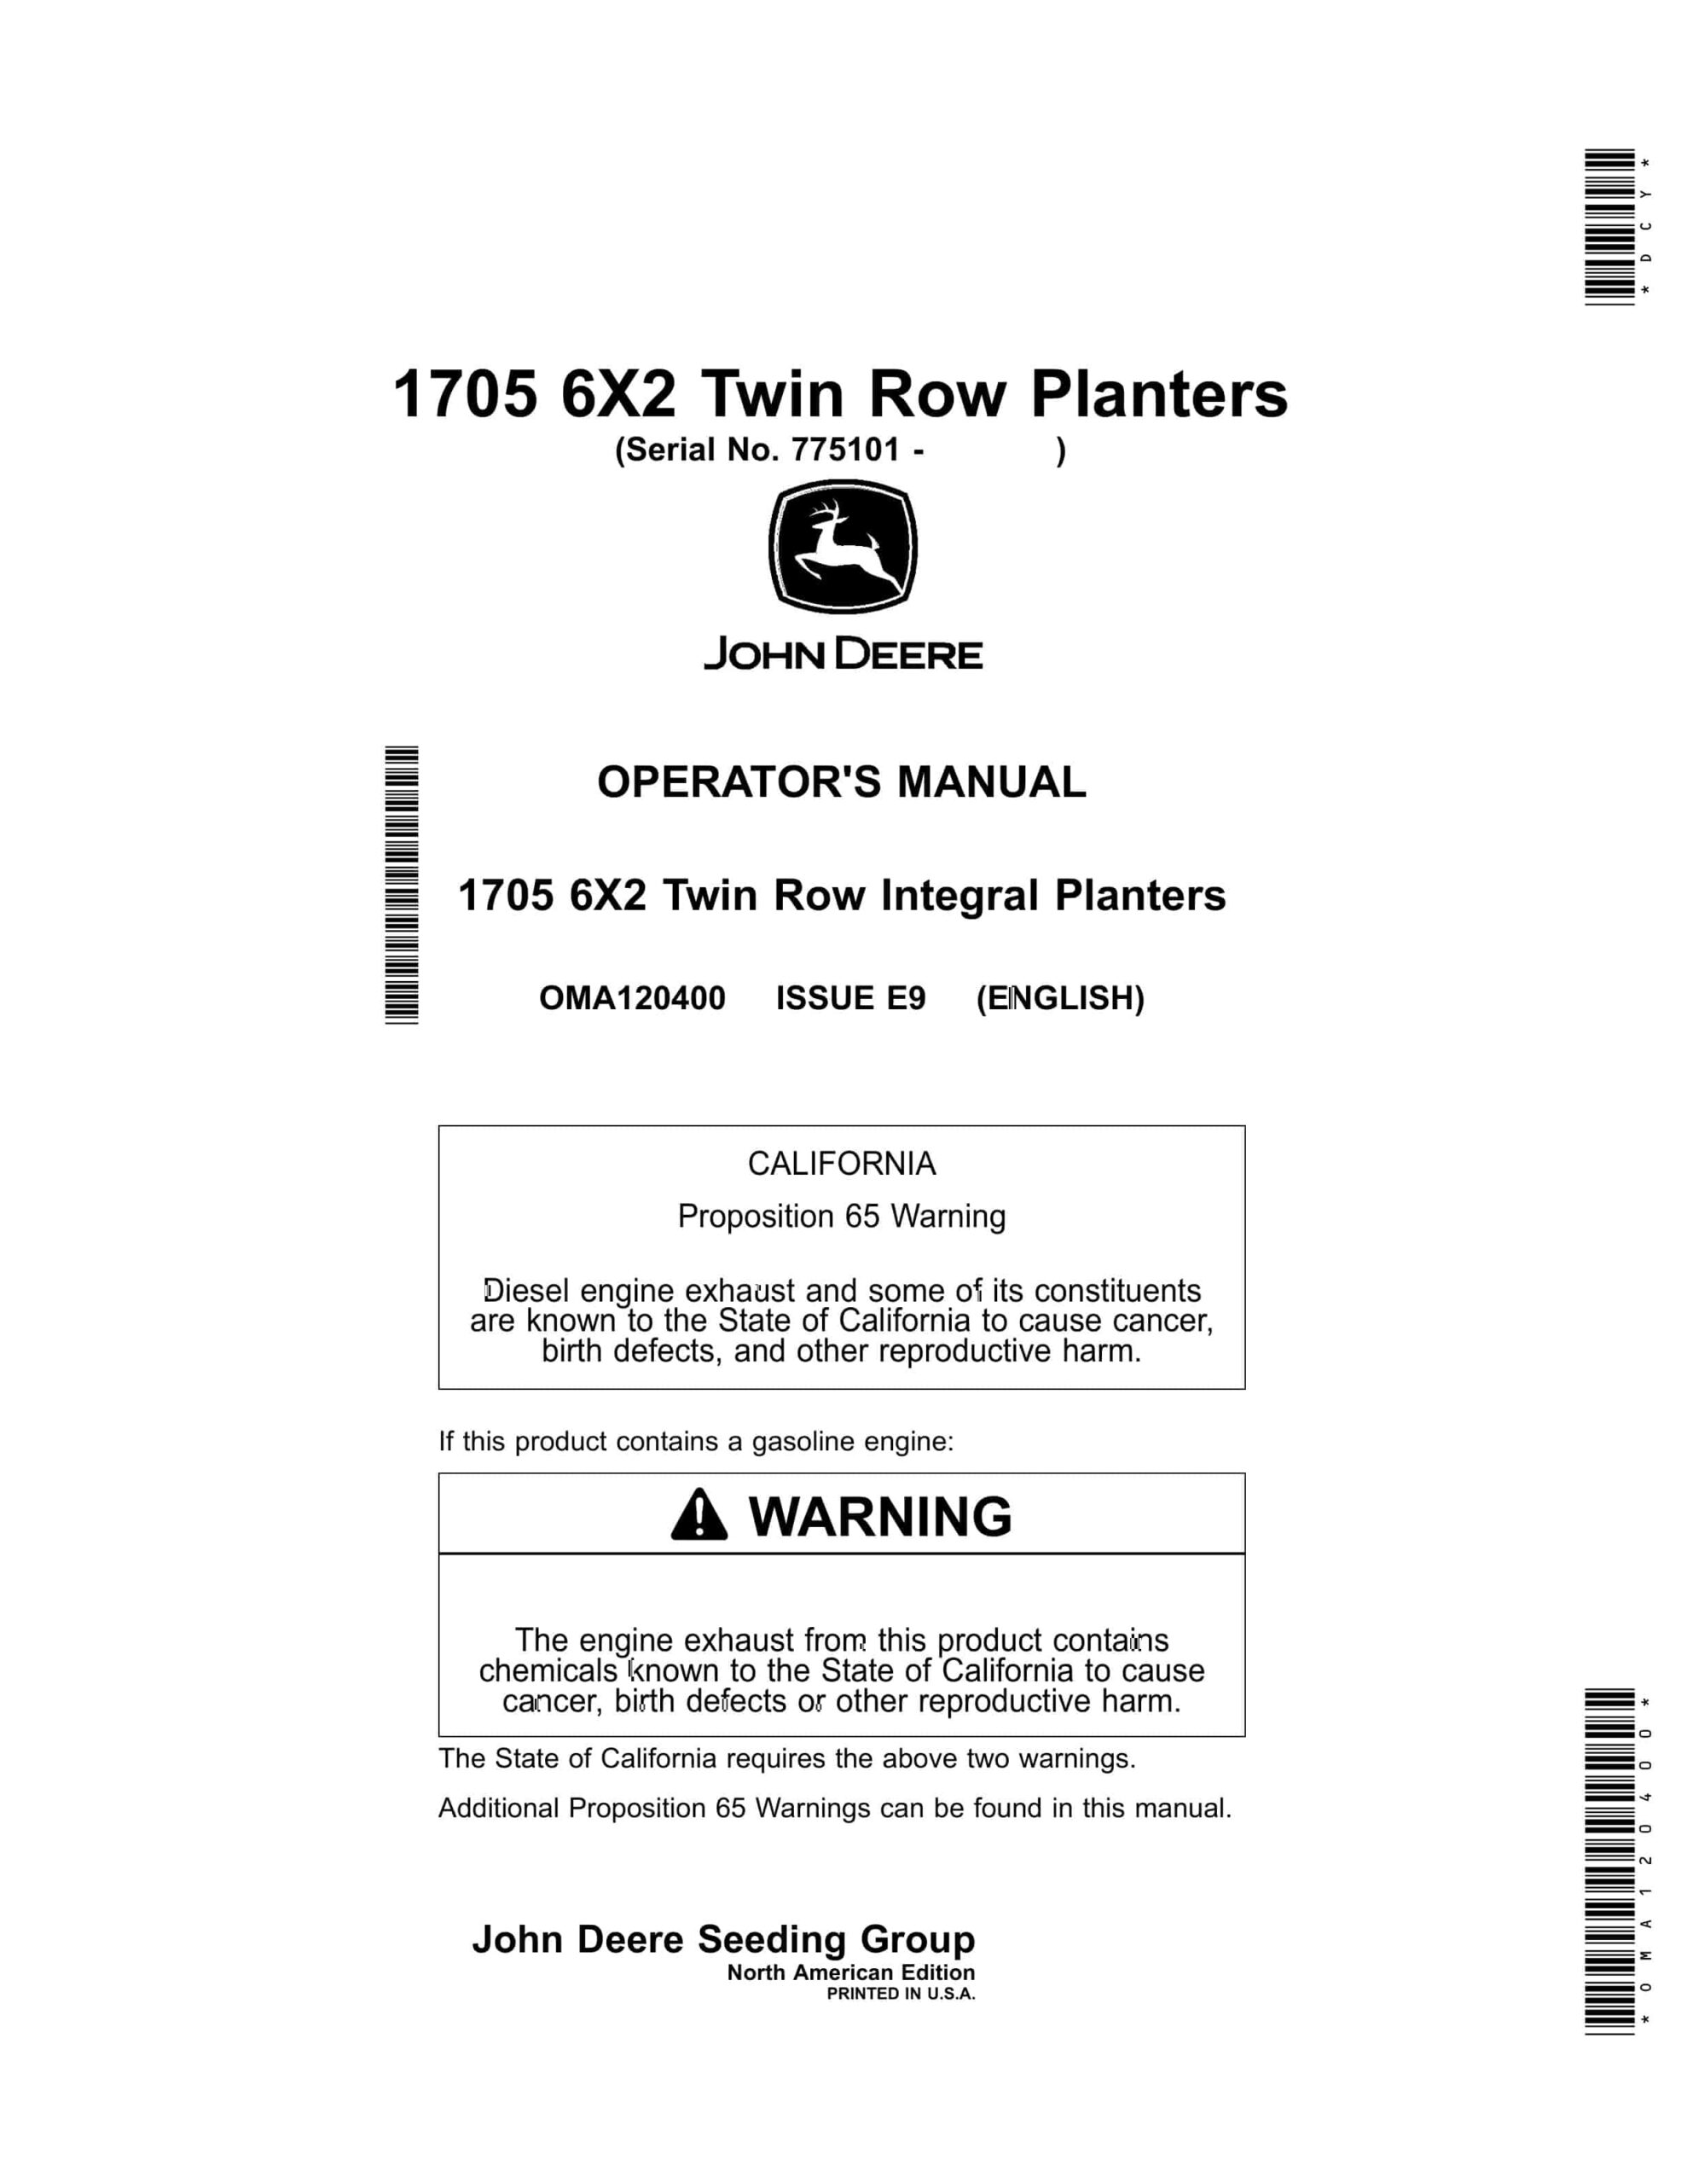 John Deere 1705 6X2 Twin Row Planter Operator Manual OMA120400-1